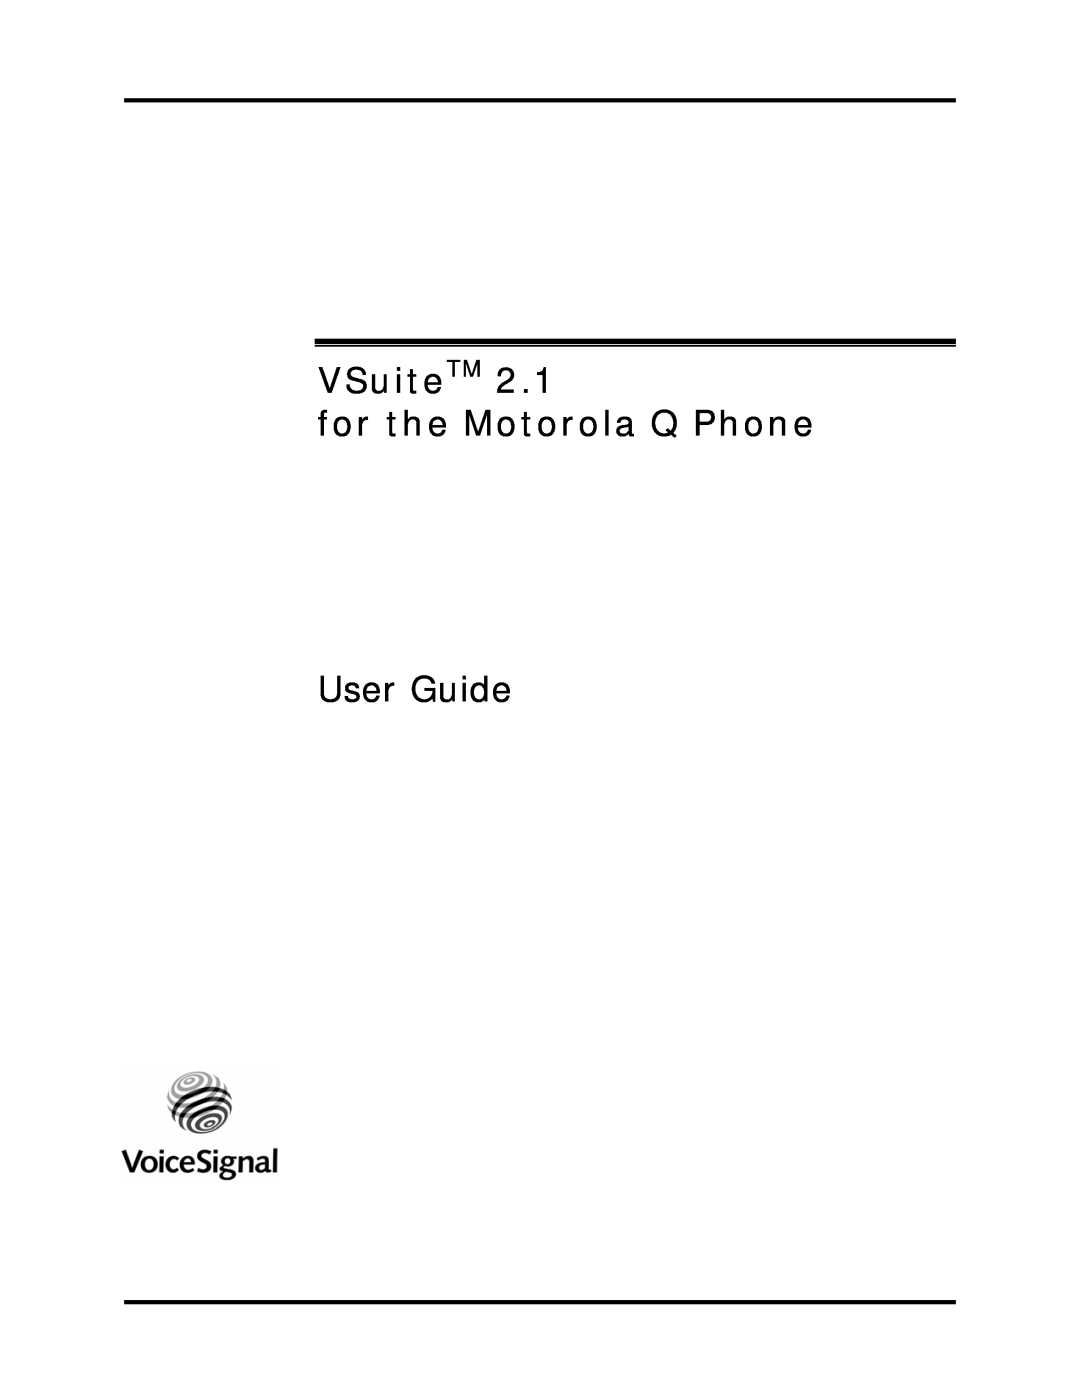 Motorola 2.1 manual VSuiteTM for the Motorola Q Phone, User Guide 